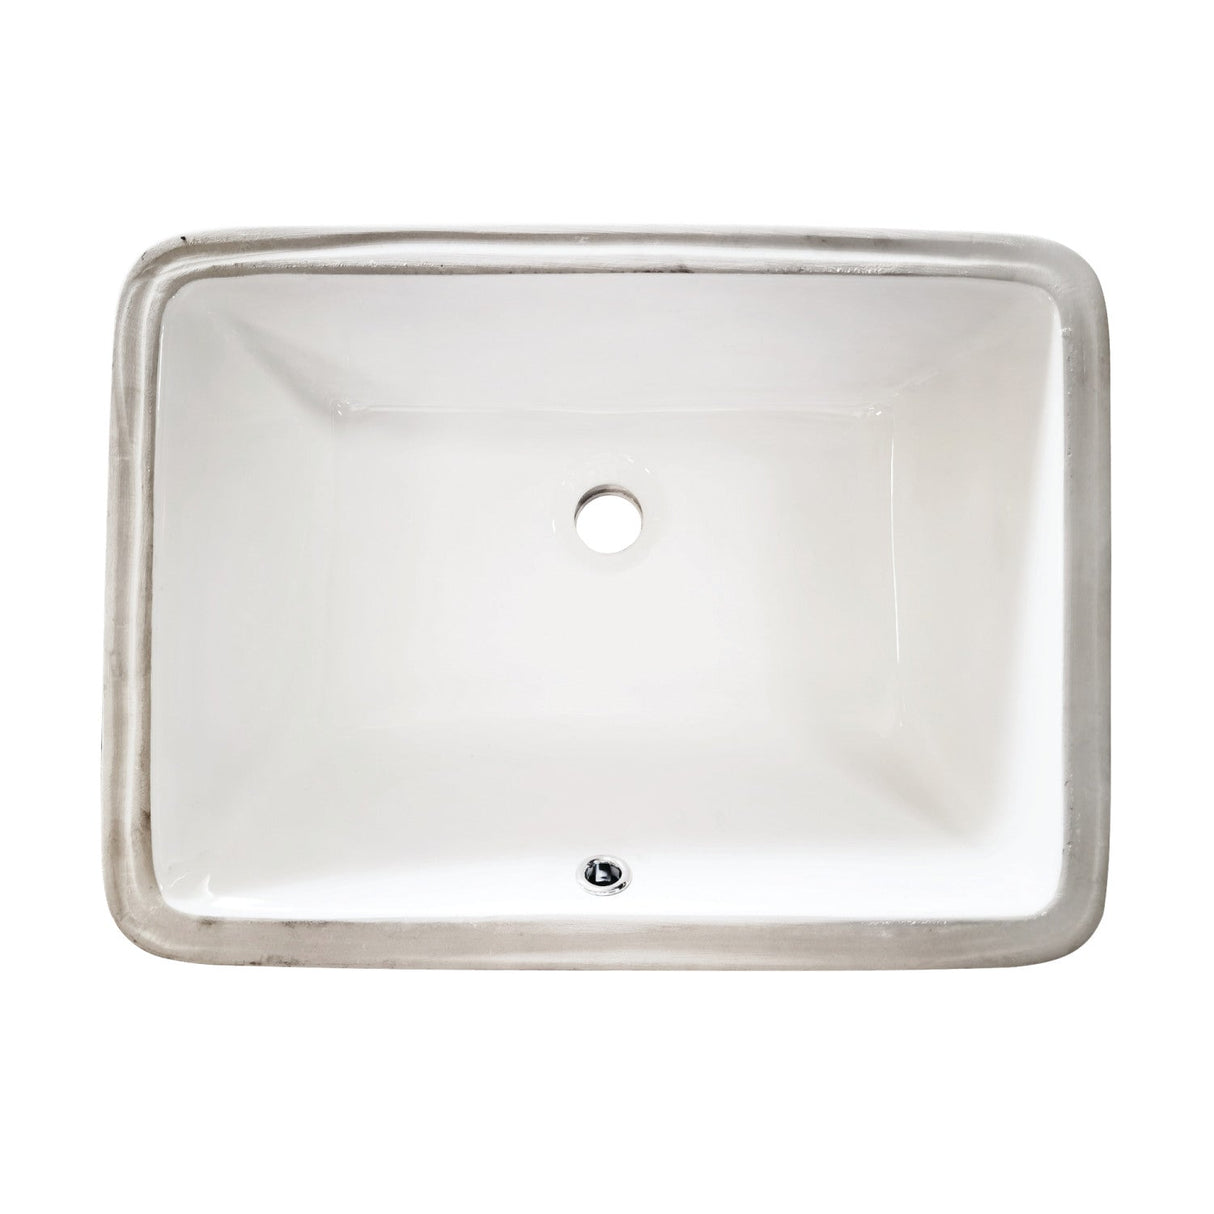 Kastell LB20158 20-Inch Ceramic Undermount Bathroom Sink, White